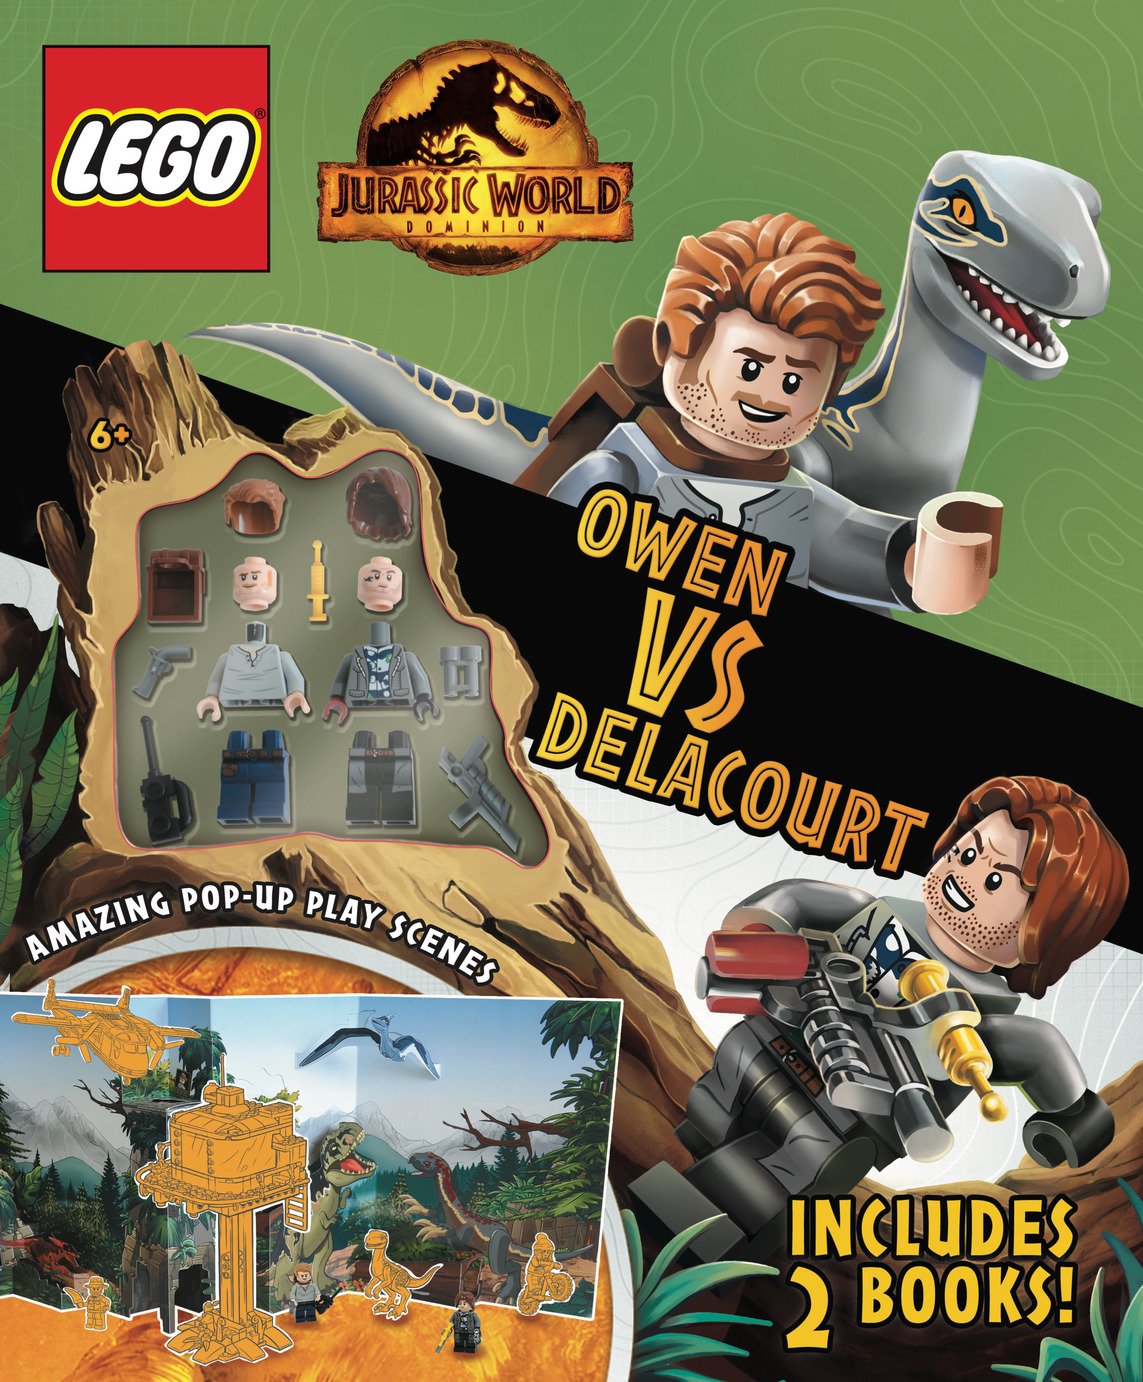 LEGO Jurassic World Owen Versus Delacour Book